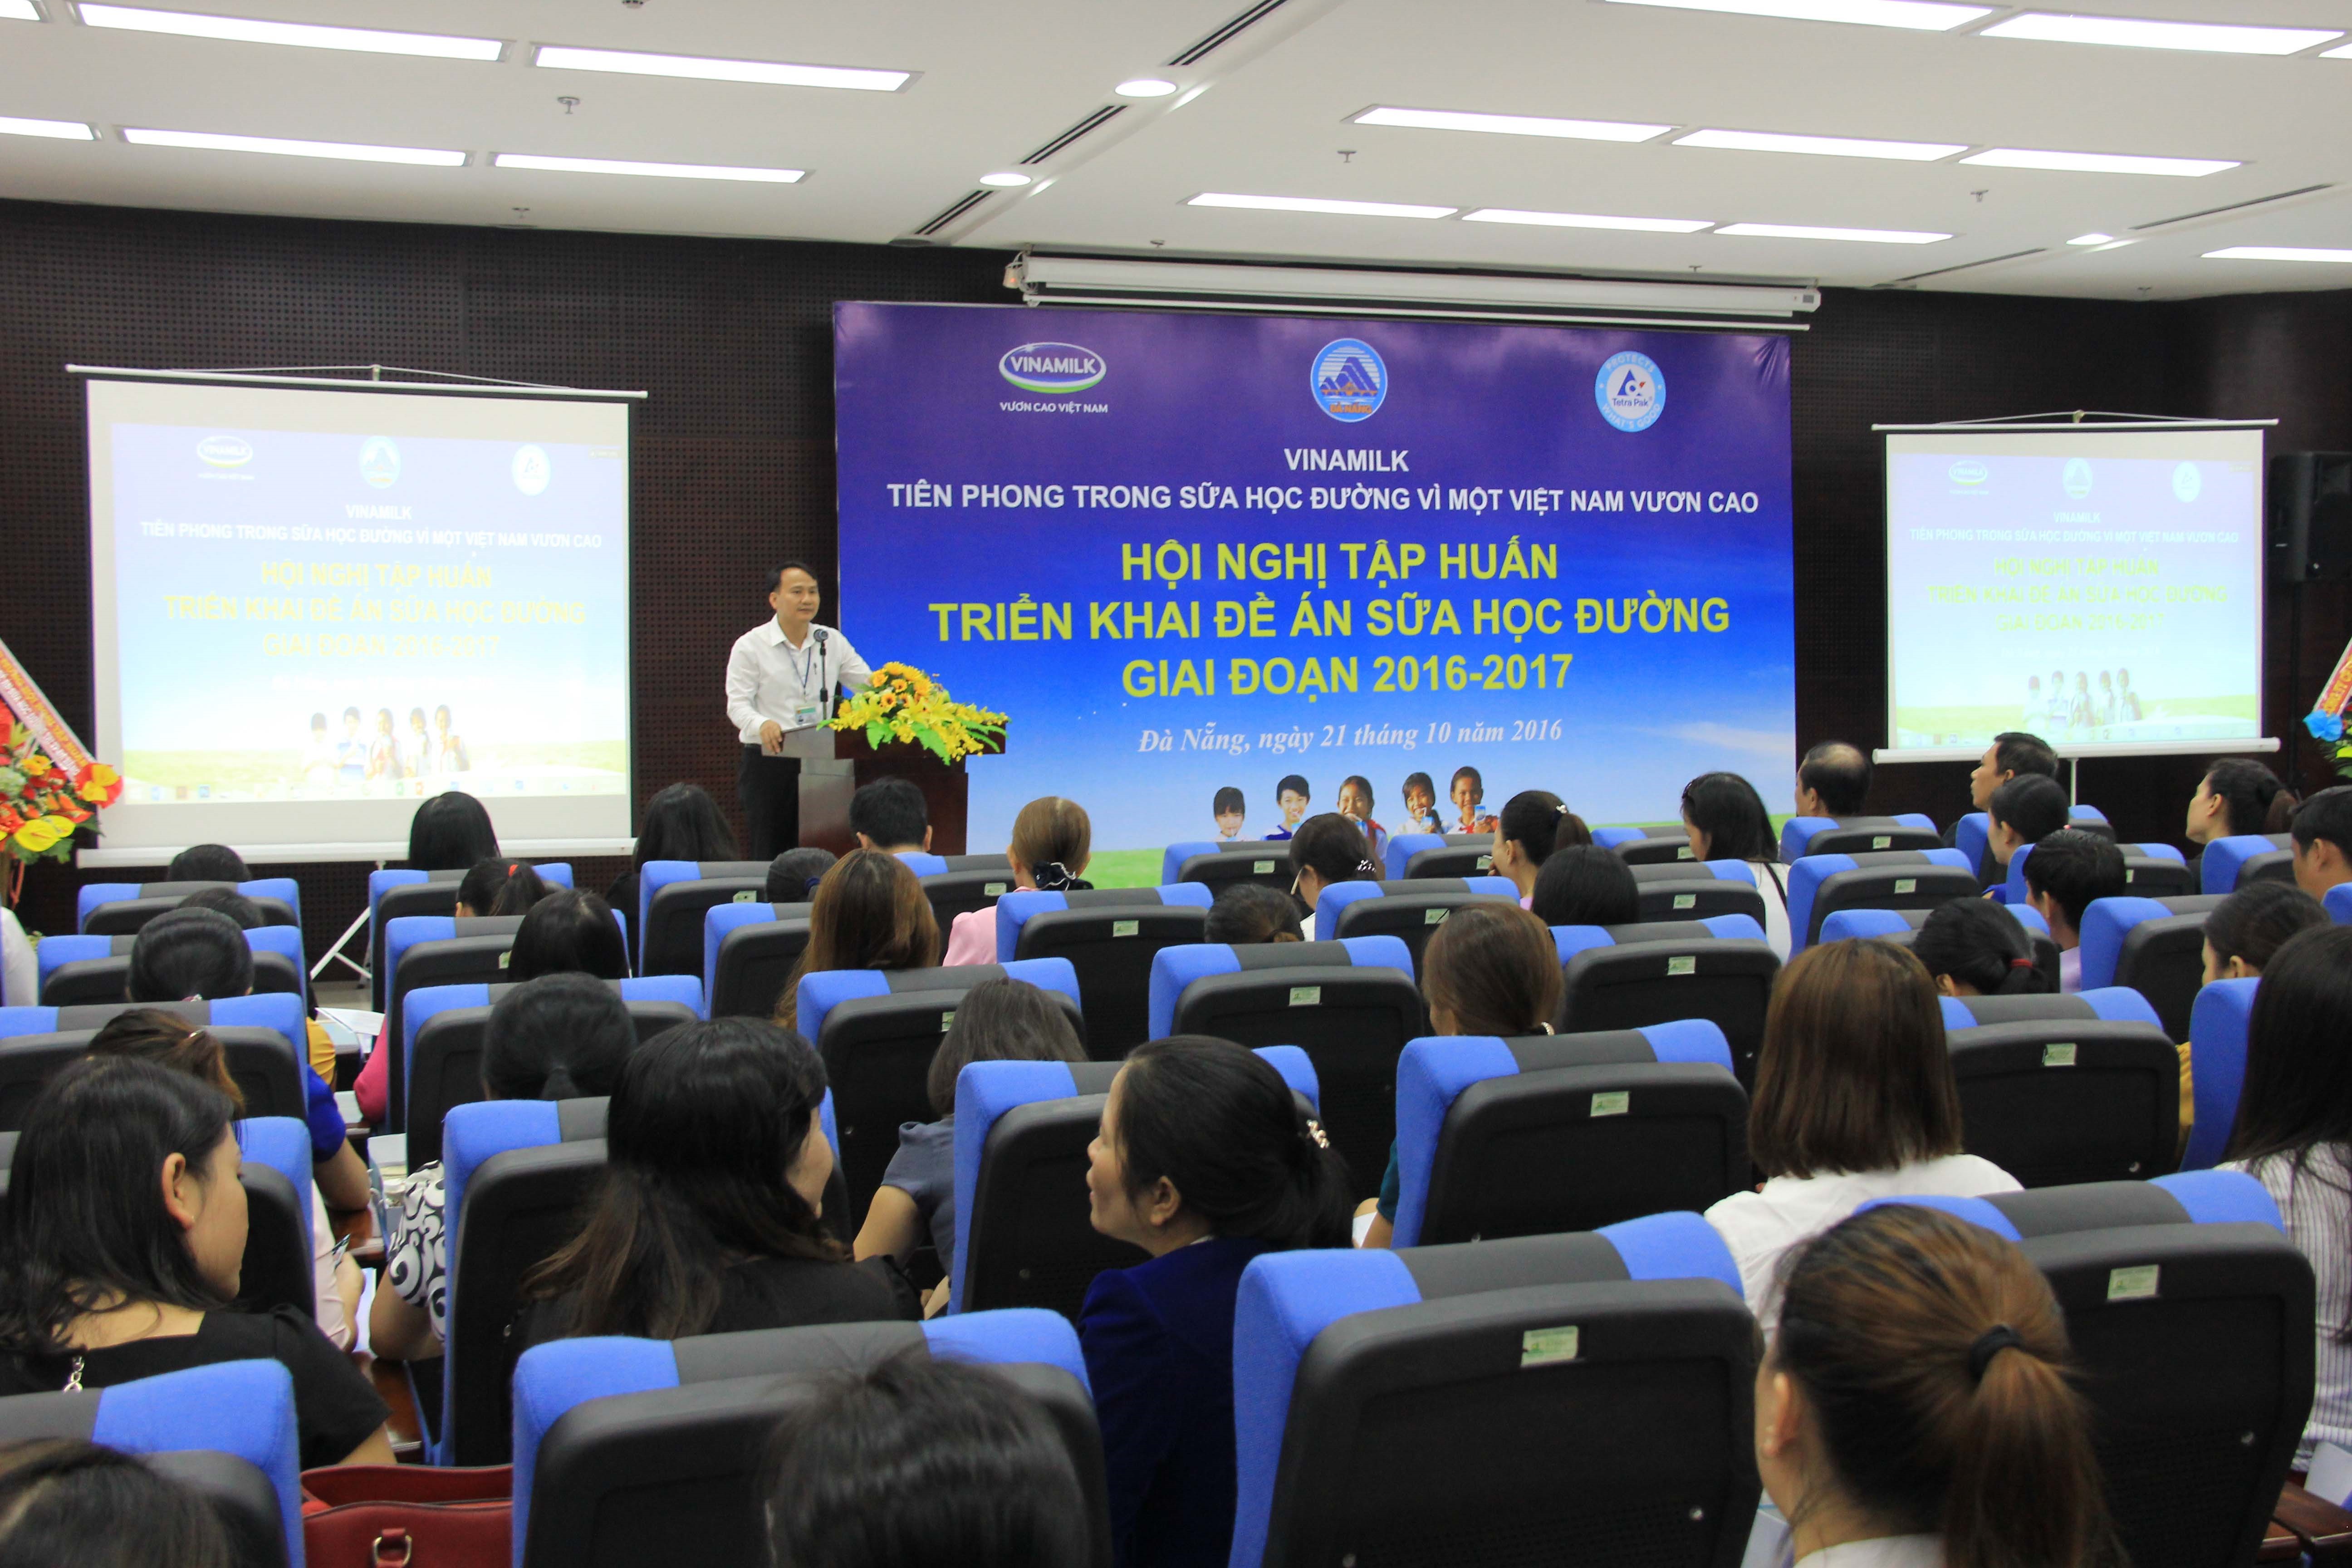 Ông Nguyễn Đình Vĩnh, Giám đốc Sở Giáo dục và Đào tạo thành phố Đà Nẵng phát biểu khai mạc Hội nghị tập huấn triển khai Đề án sữa học đường Quốc gia tại Đà Nẵng.